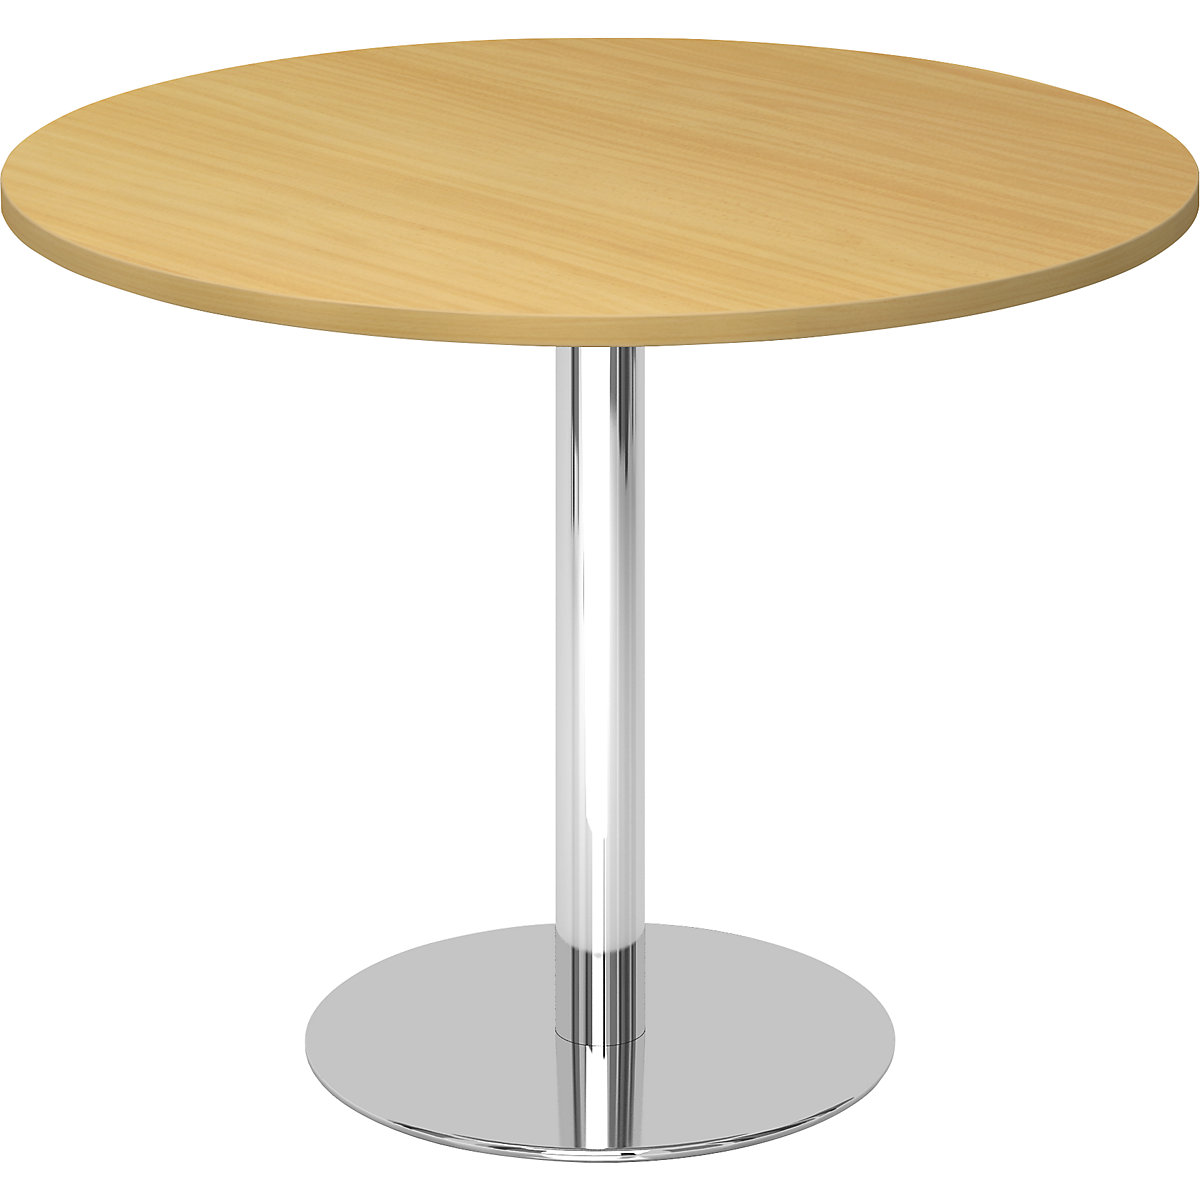 Jednací stůl, Ø 1000 mm, výška 755 mm, pochromovaný podstavec, deska bukový dekor